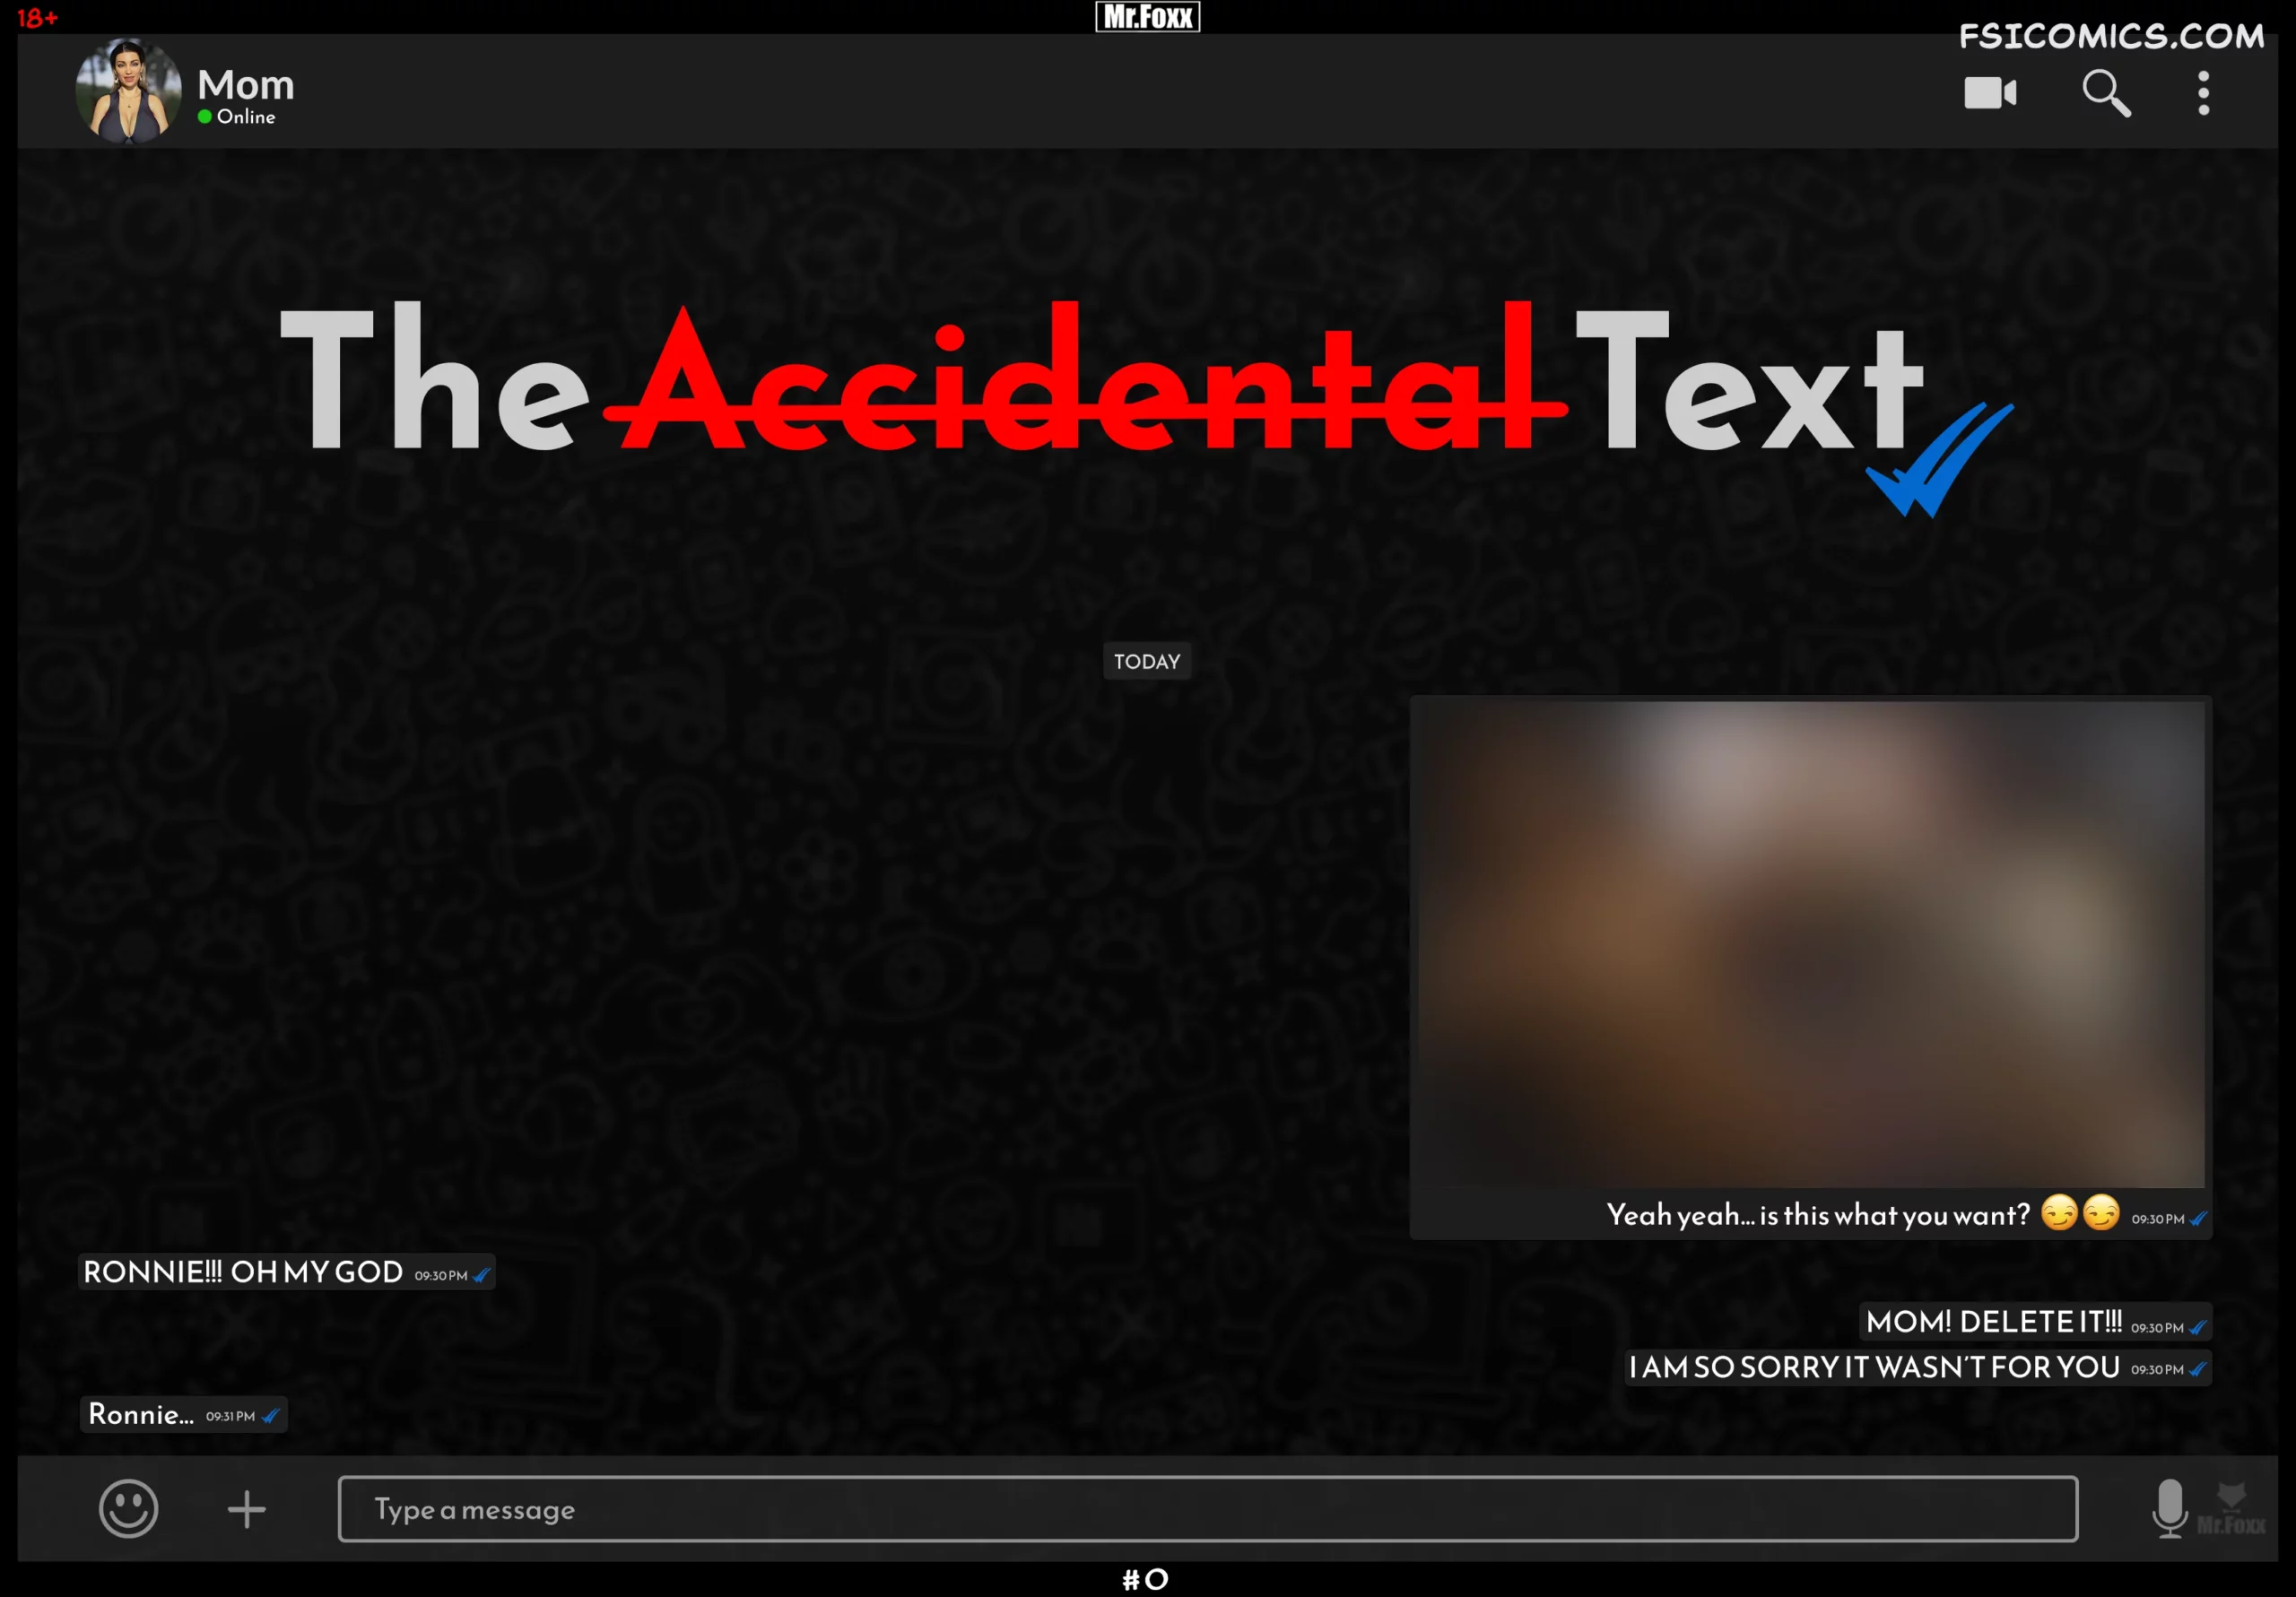 The Accidental Text - Mr.FOXX - 85 - FSIComics